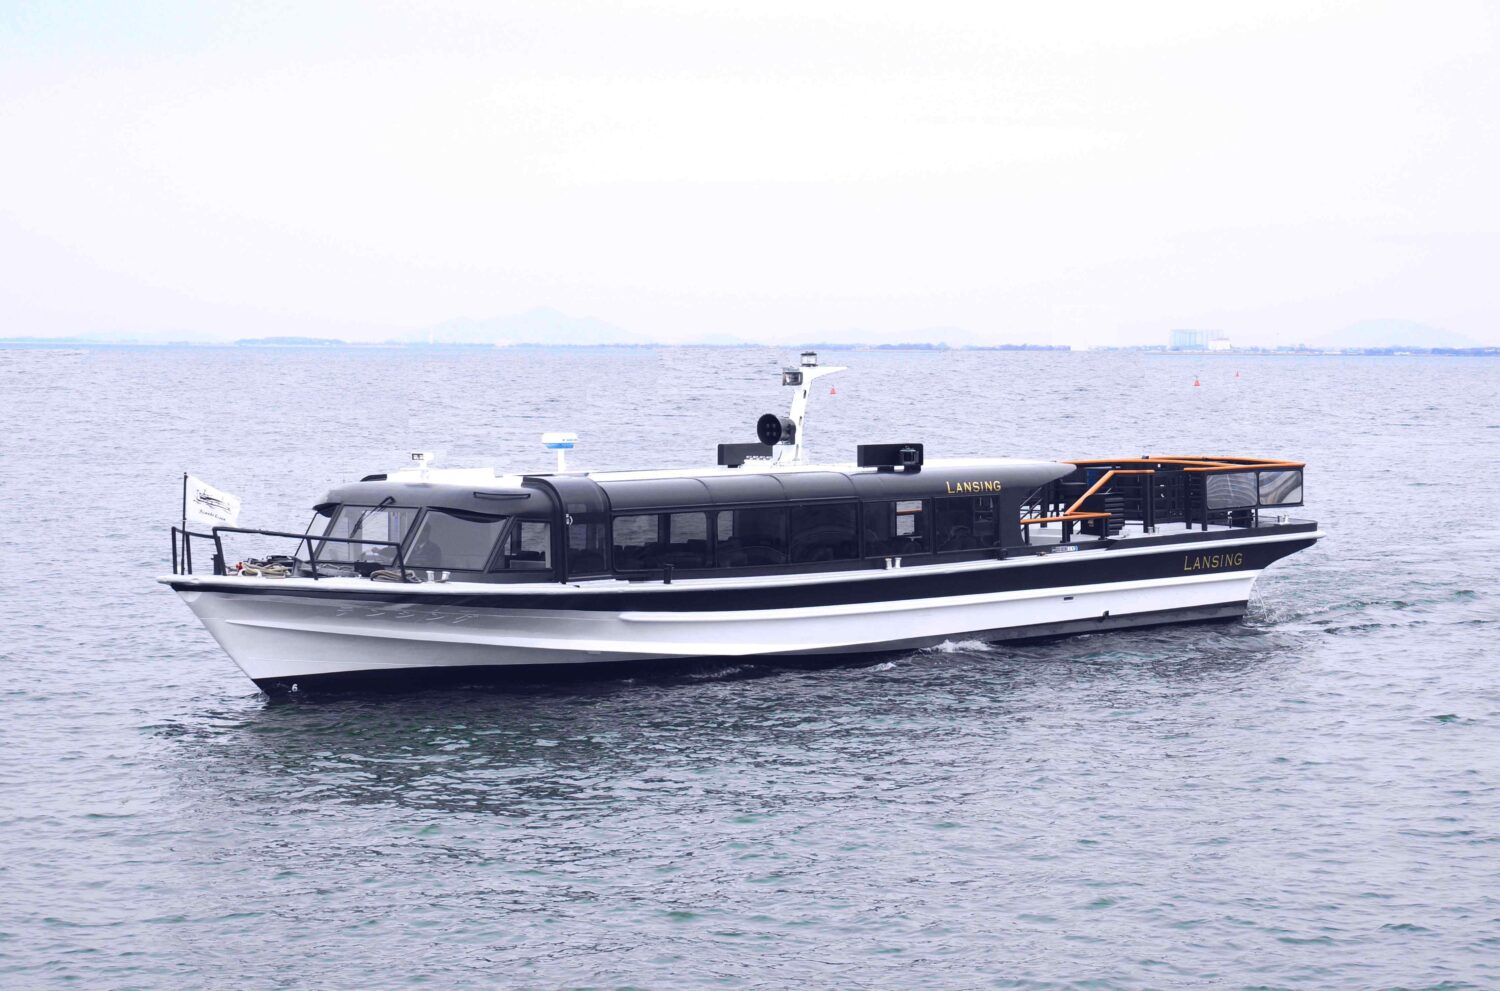 琵琶湖汽船、びわ湖の有人島訪れるツアー企画